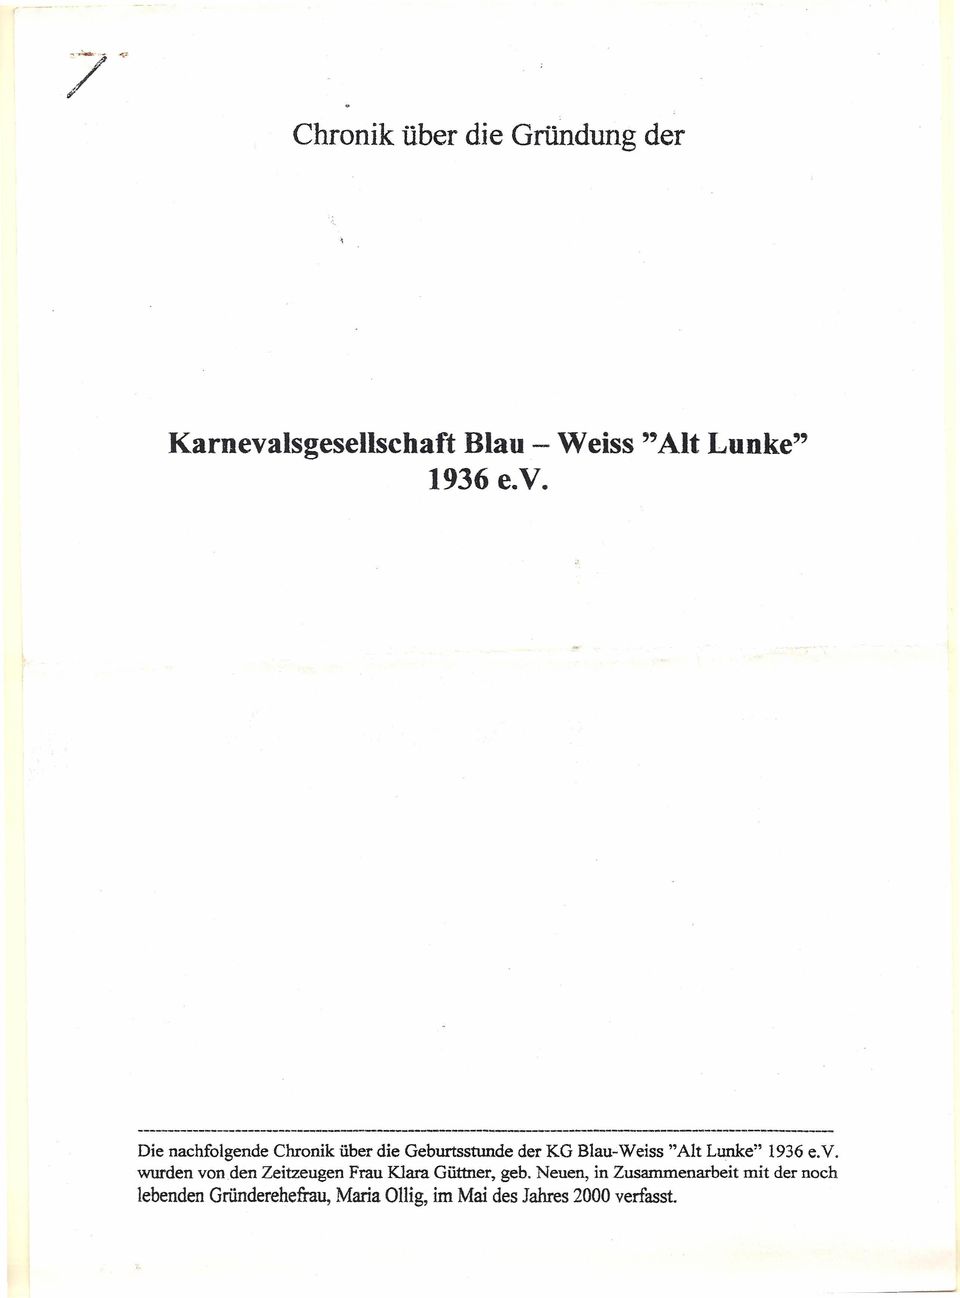 1936 e.v. wurden von den Zeitzeugen Frau Klara Güttner, geb.